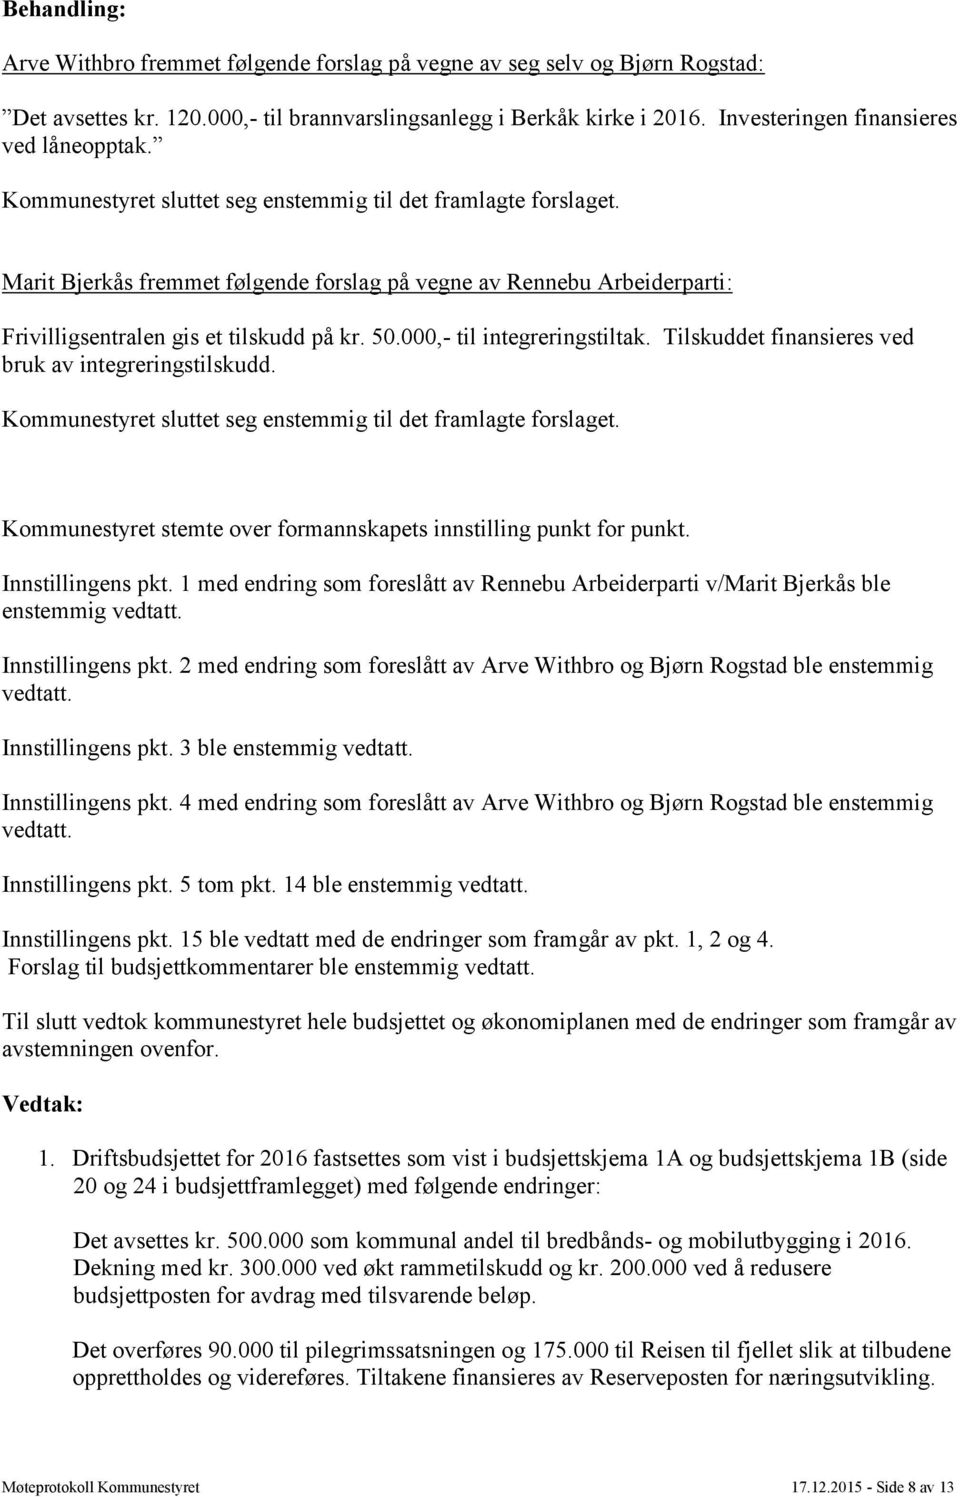 Marit Bjerkås fremmet følgende forslag på vegne av Rennebu Arbeiderparti: Frivilligsentralen gis et tilskudd på kr. 50.000,- til integreringstiltak.